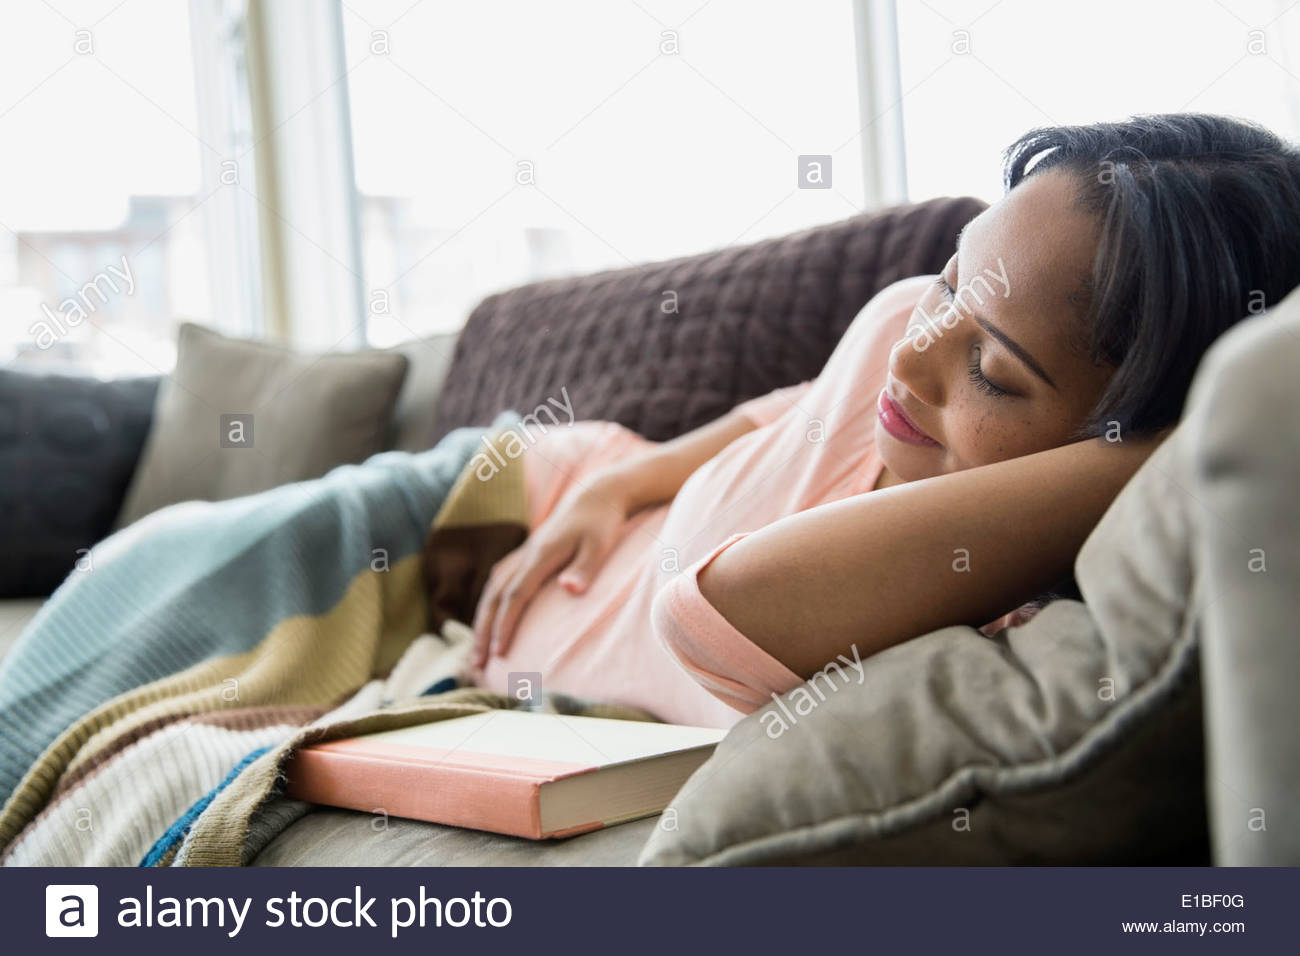 Pregnant woman sleeping on sofa Stock Photo